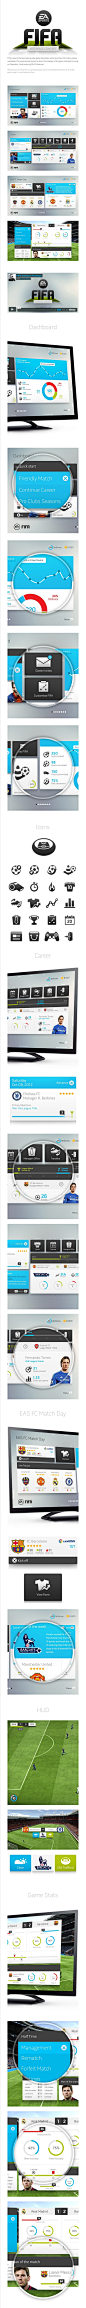 Fifa interface concept - Rodrigo Bellão #Web#